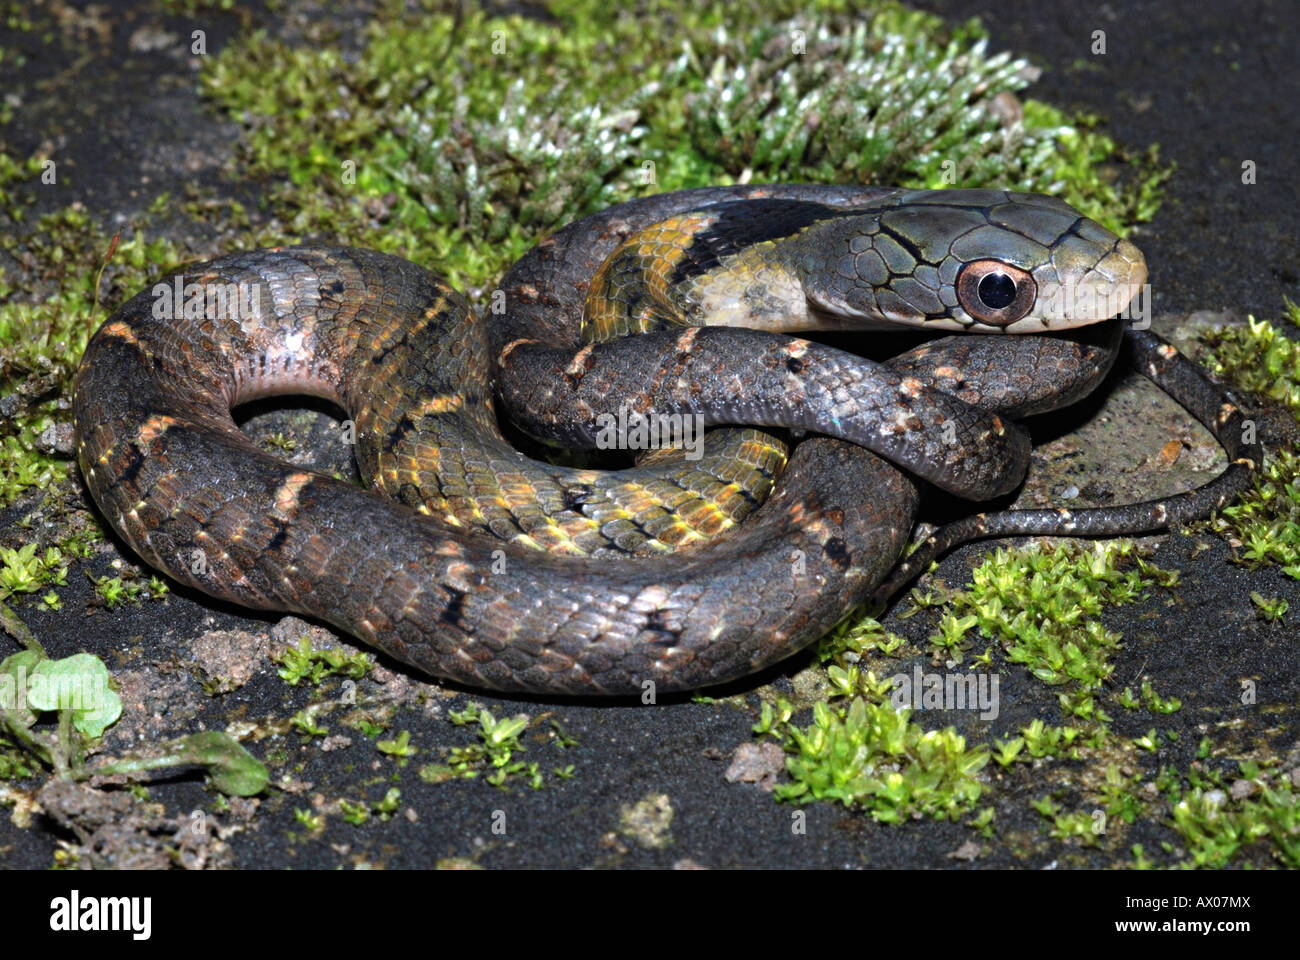 Falso cobra di acqua . Hydrodynastes gigas. Un colubrid serpente che possono imitare di elapid cobra molto bene. Foto Stock